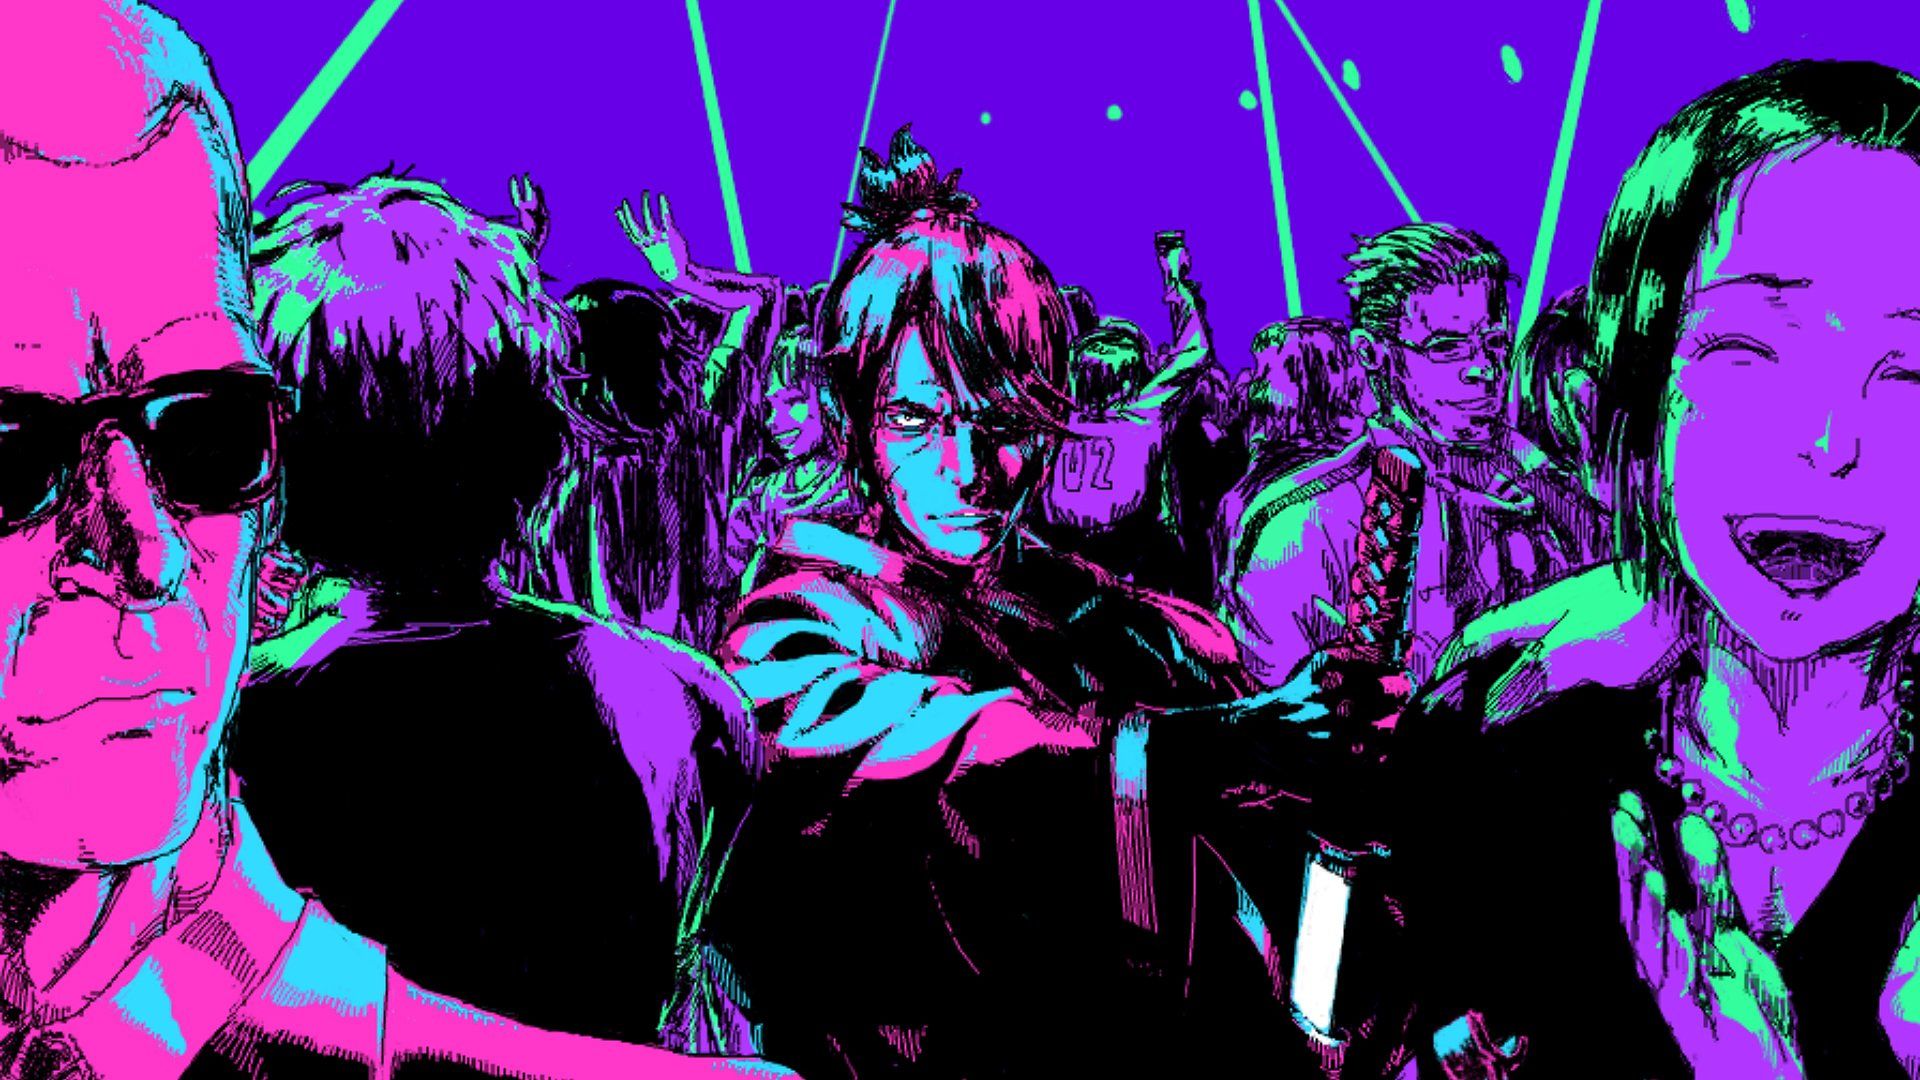 Hd cyberpunk: Cyberpunk Katana Zero Wallpaper